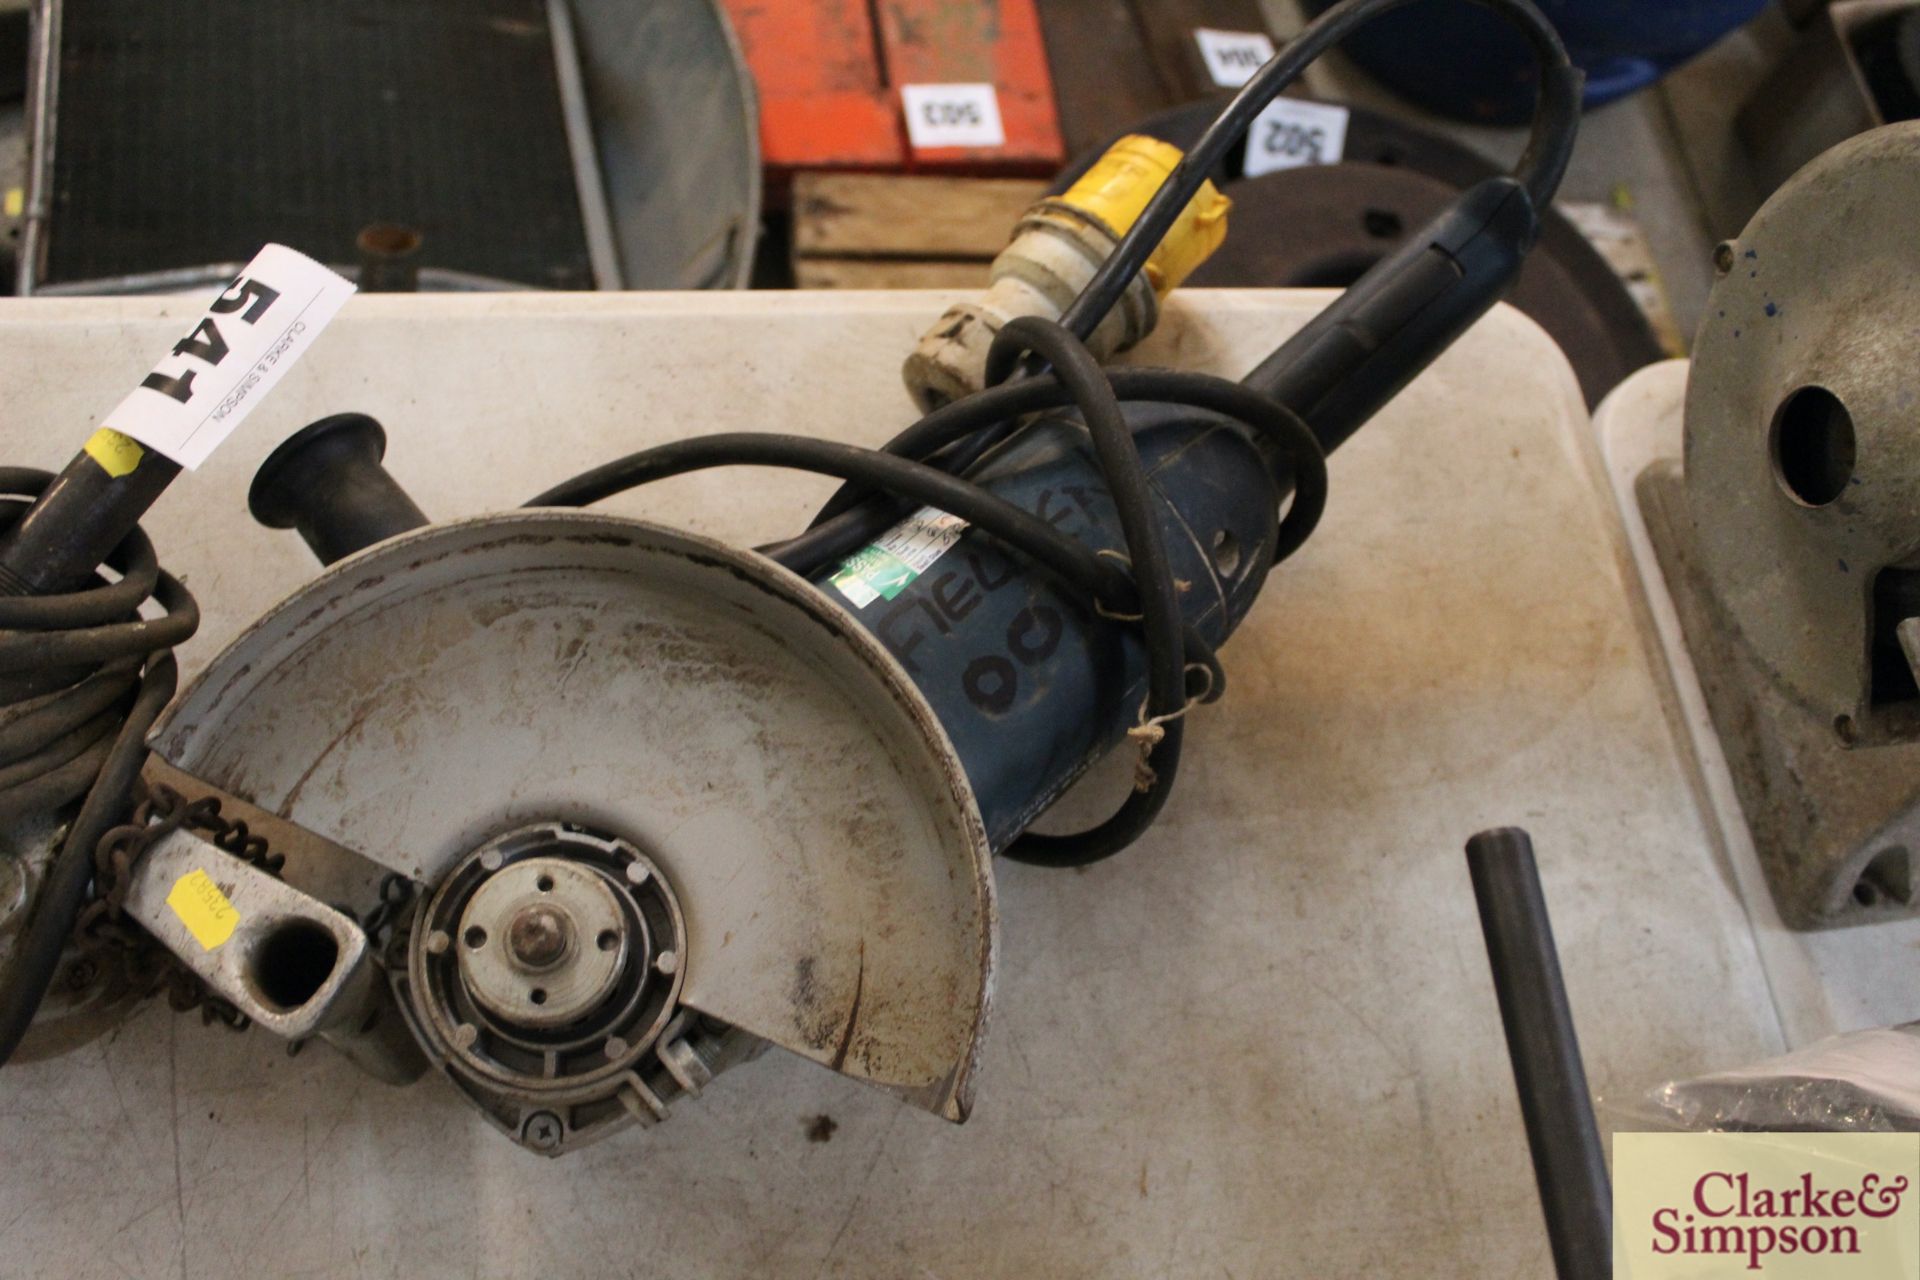 Bosch 110v 9in angle grinder. - Image 2 of 2